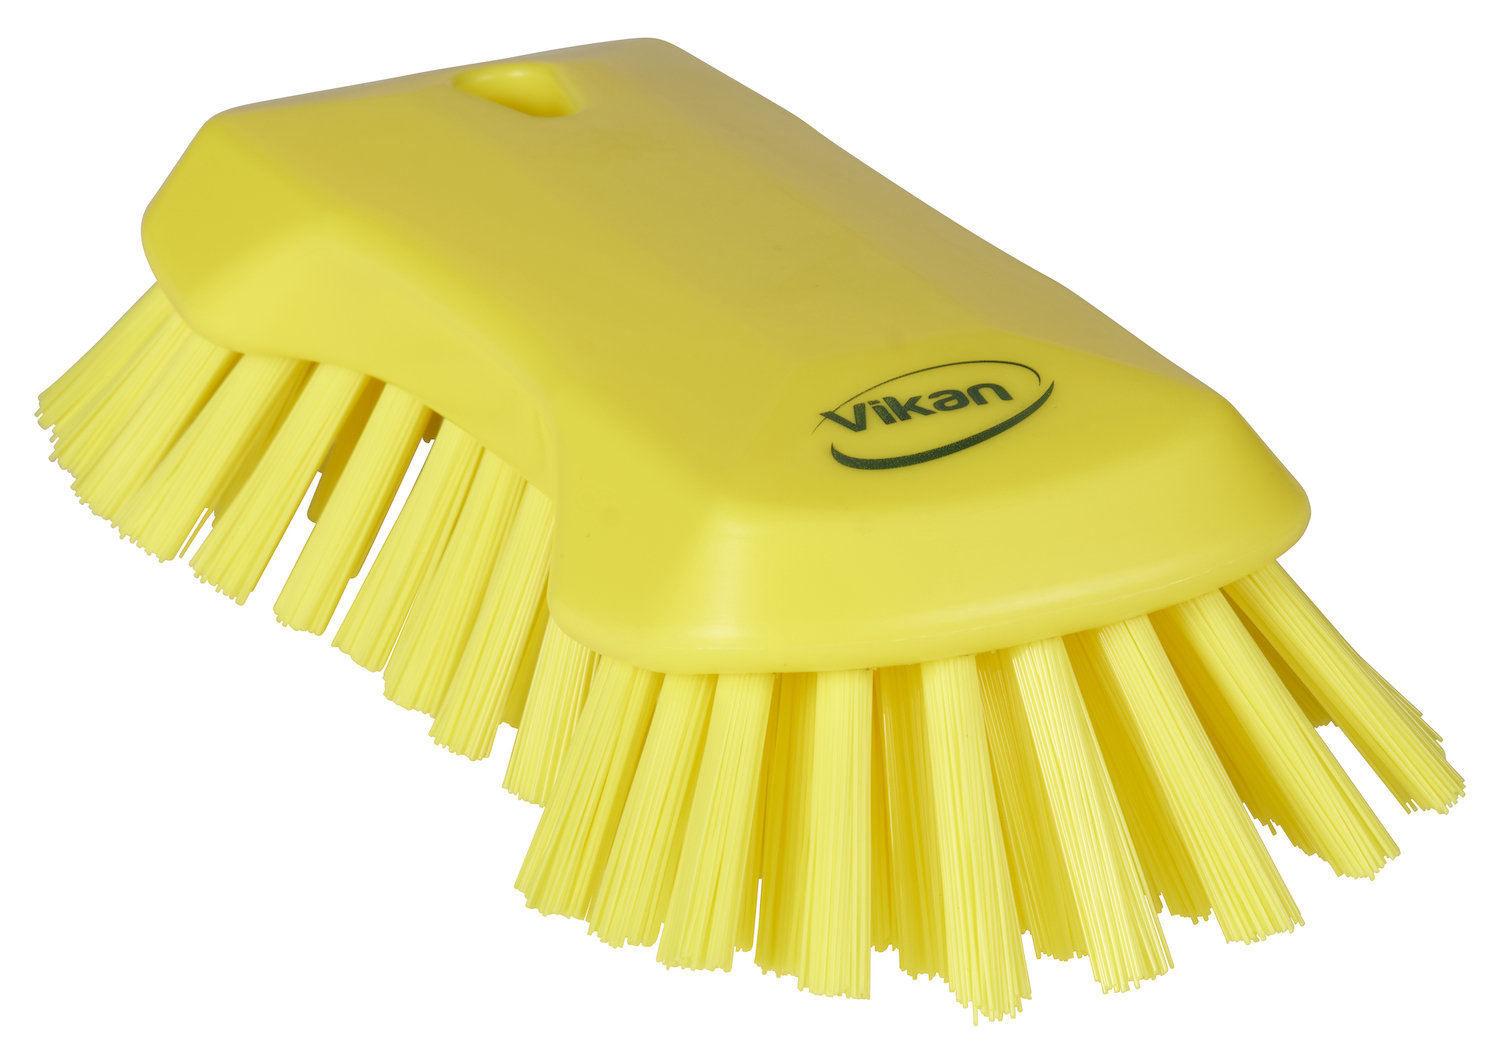 Vikan XL Hand Brush, 230 mm, Very hard, Yellow